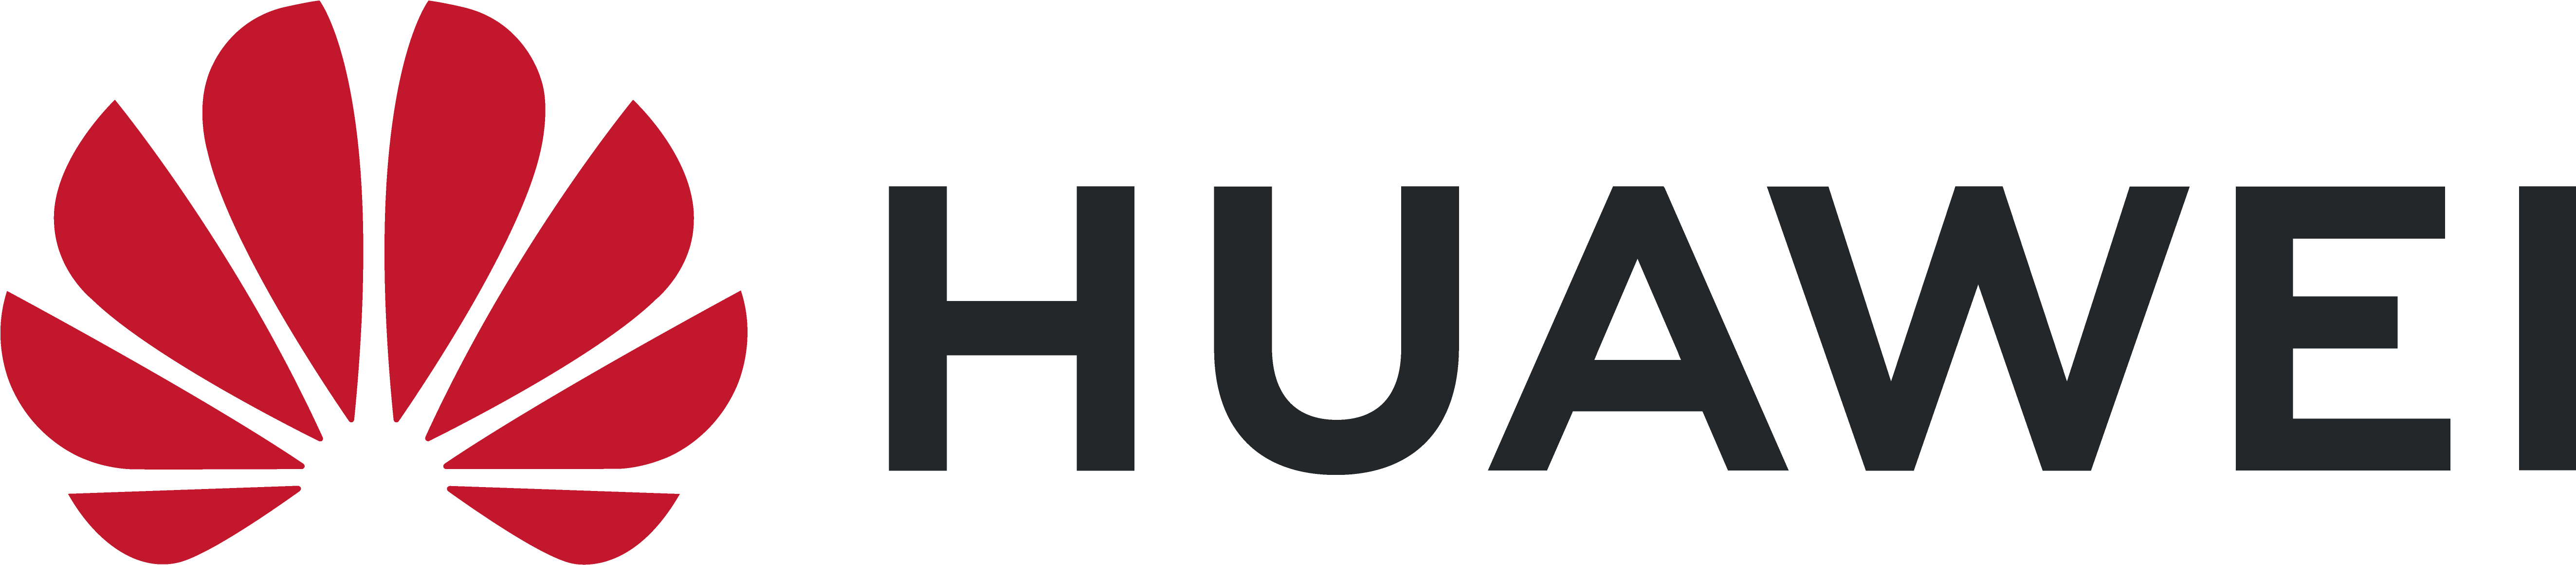 Huawei Logo Png 5293 X 1160